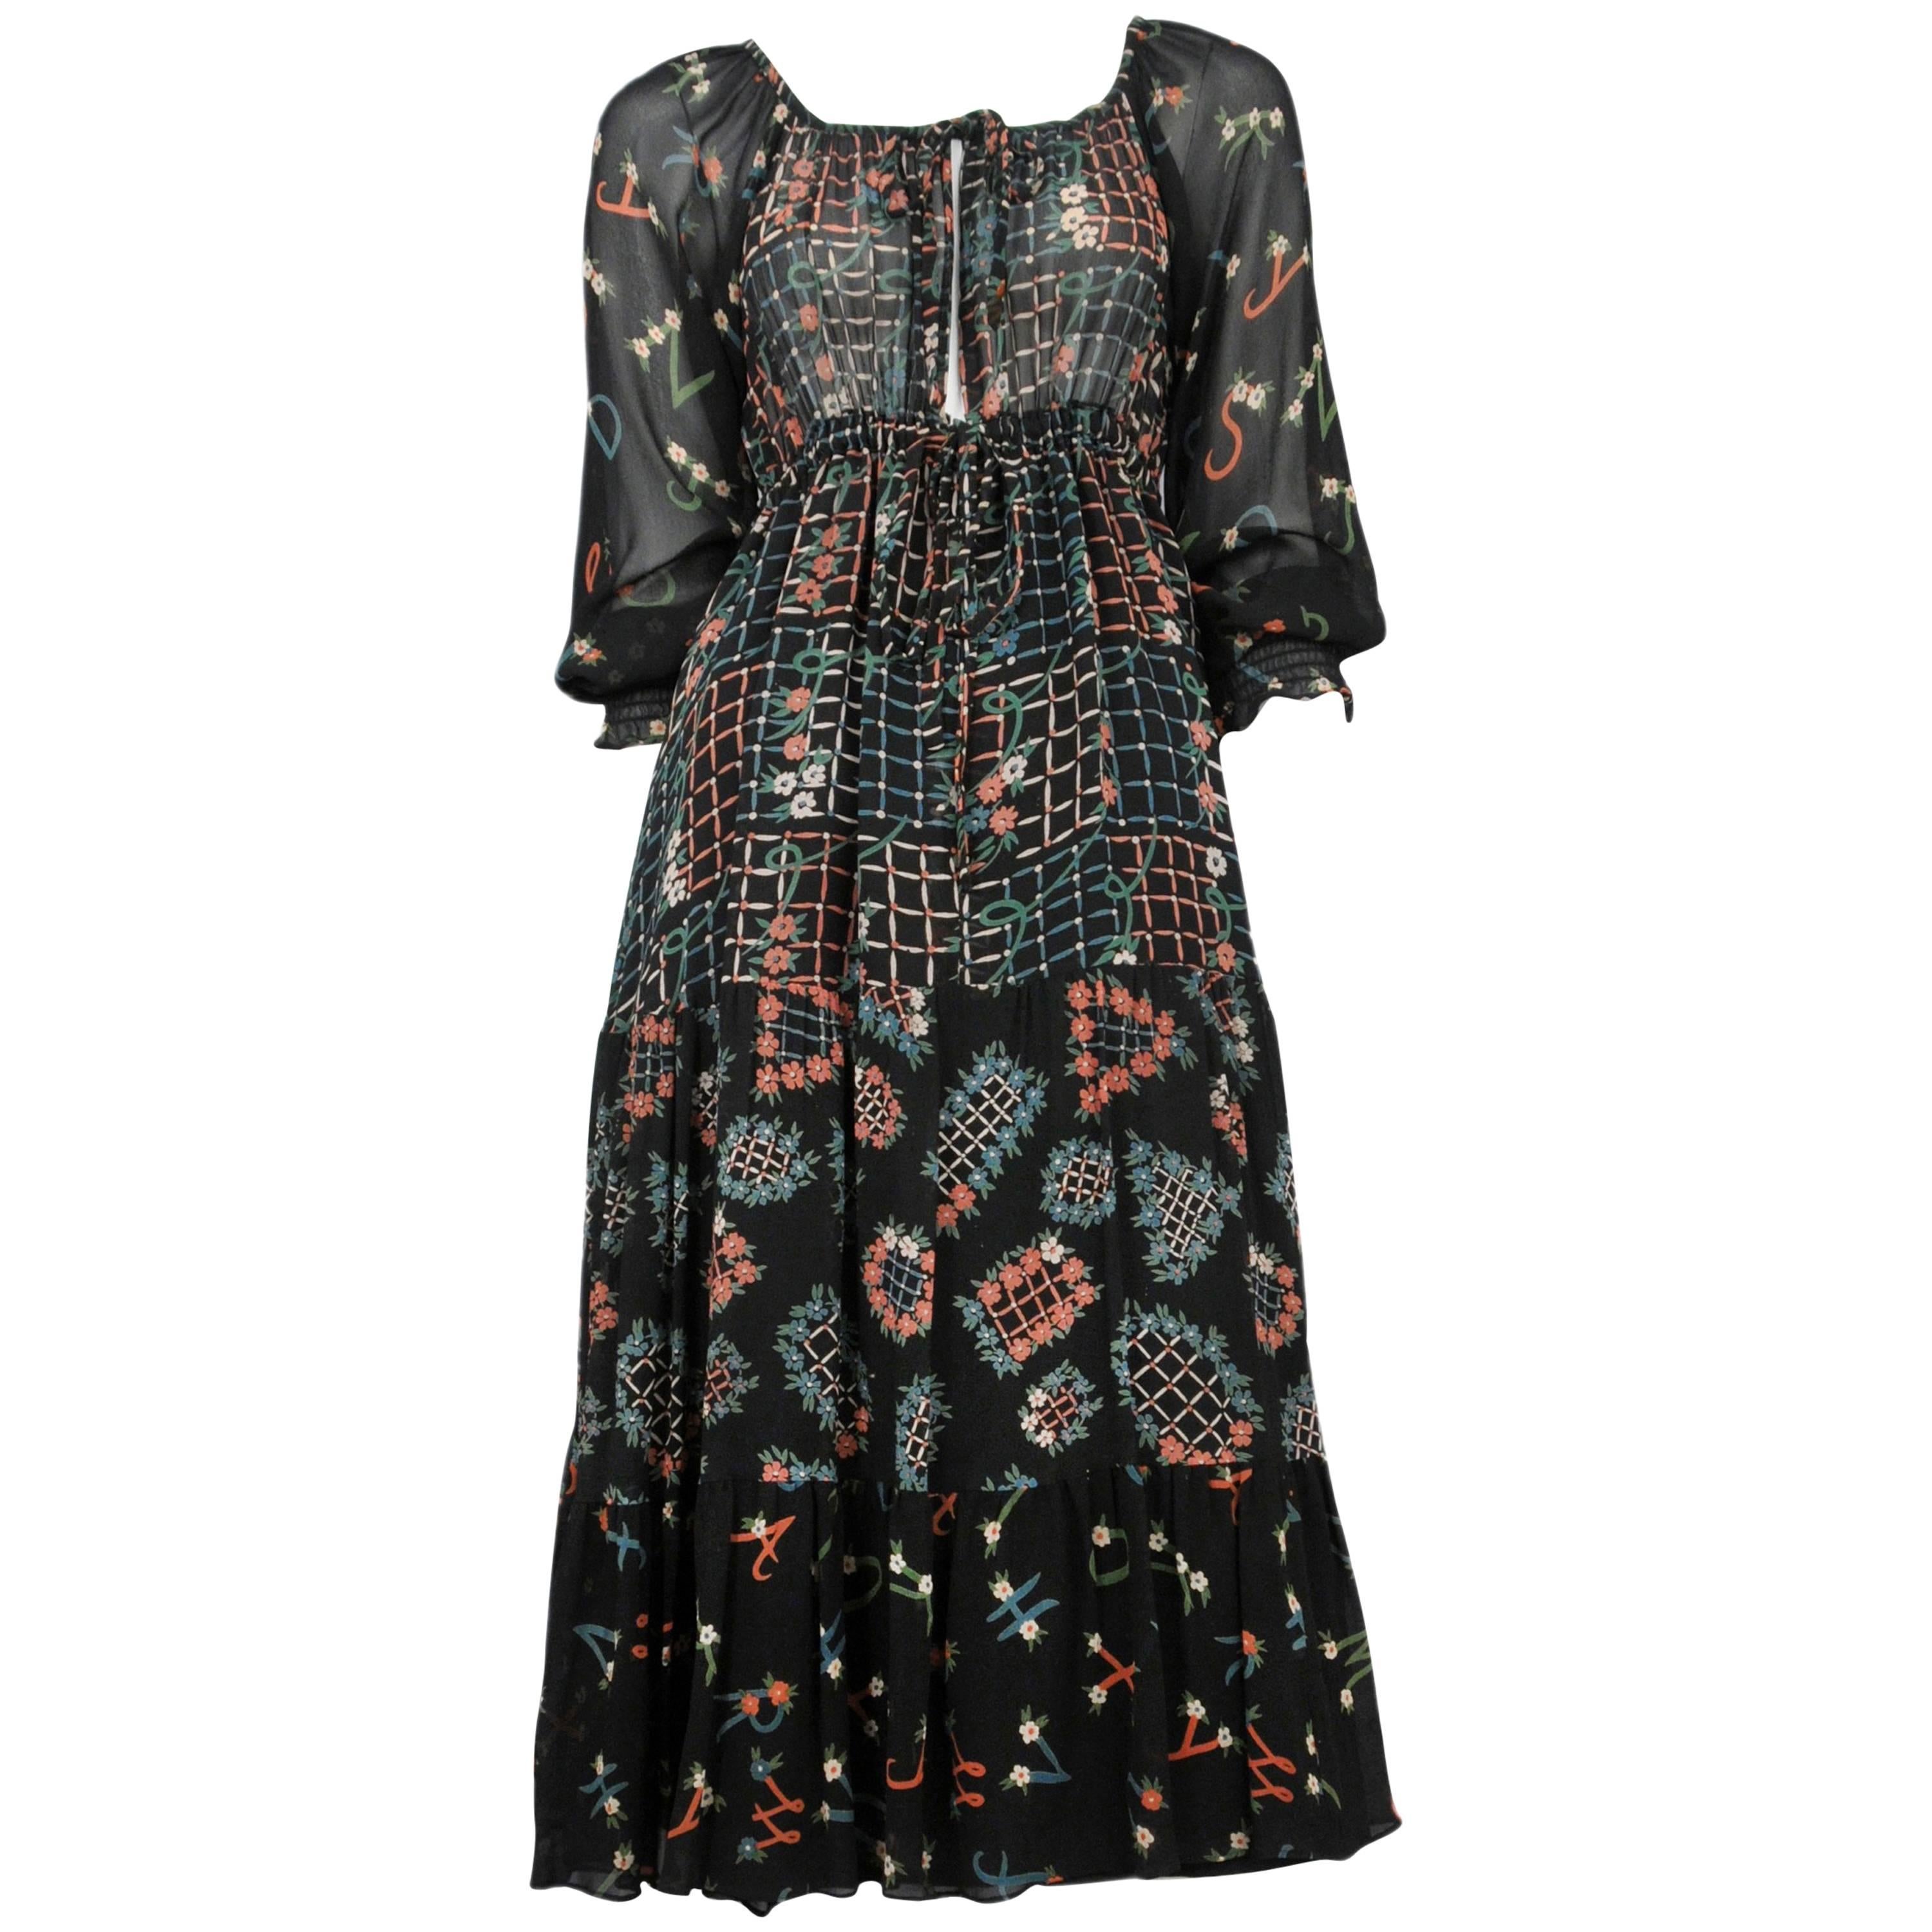 Ossie Clark Day Dress with Celia Birtwell Print